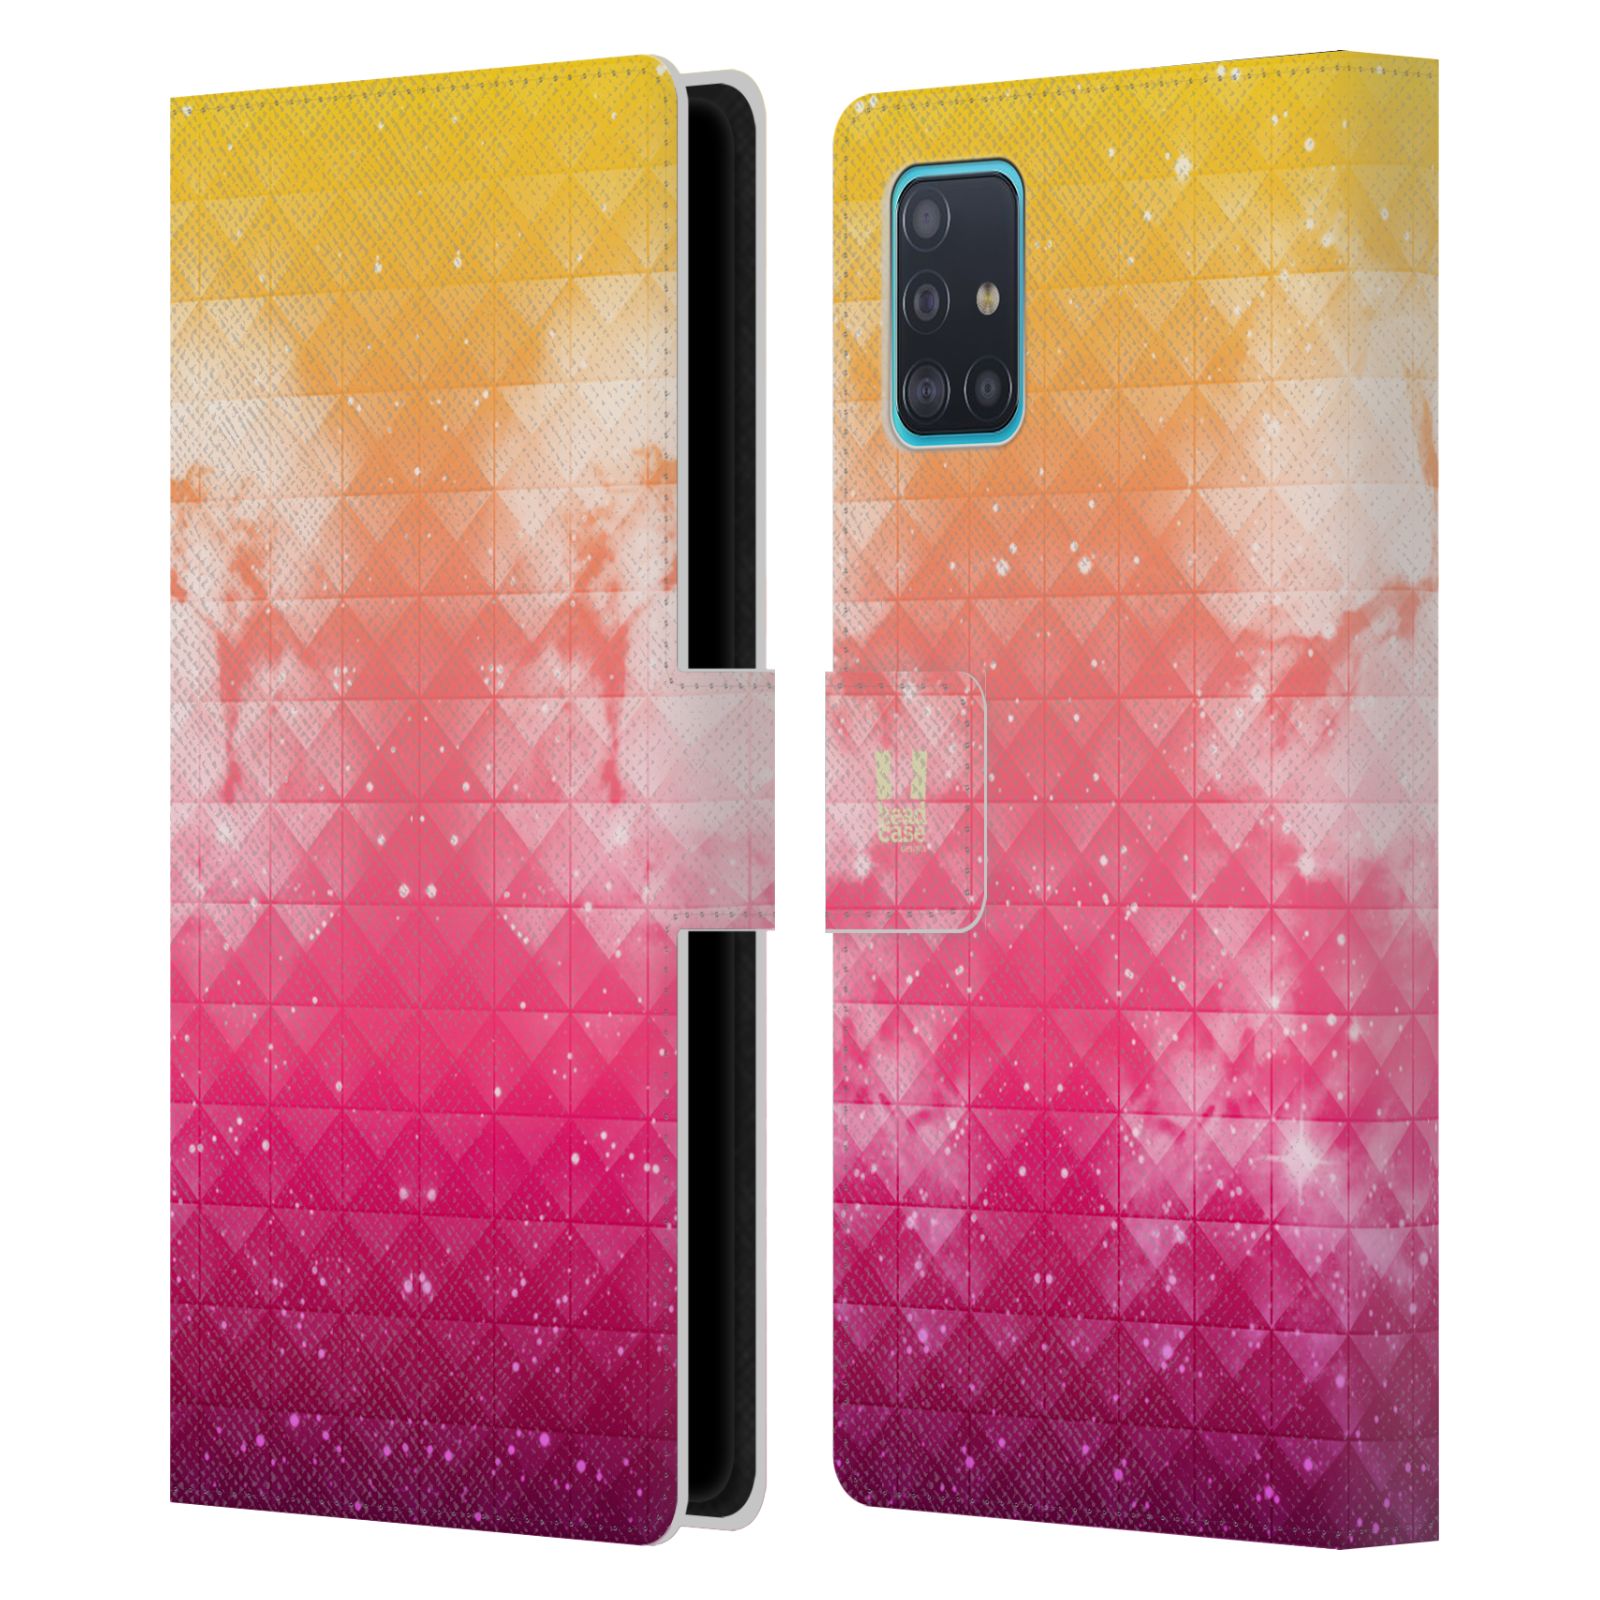 Pouzdro na mobil Samsung Galaxy A51 (A515F) barevná vesmírná mlhovina oranžová a růžová